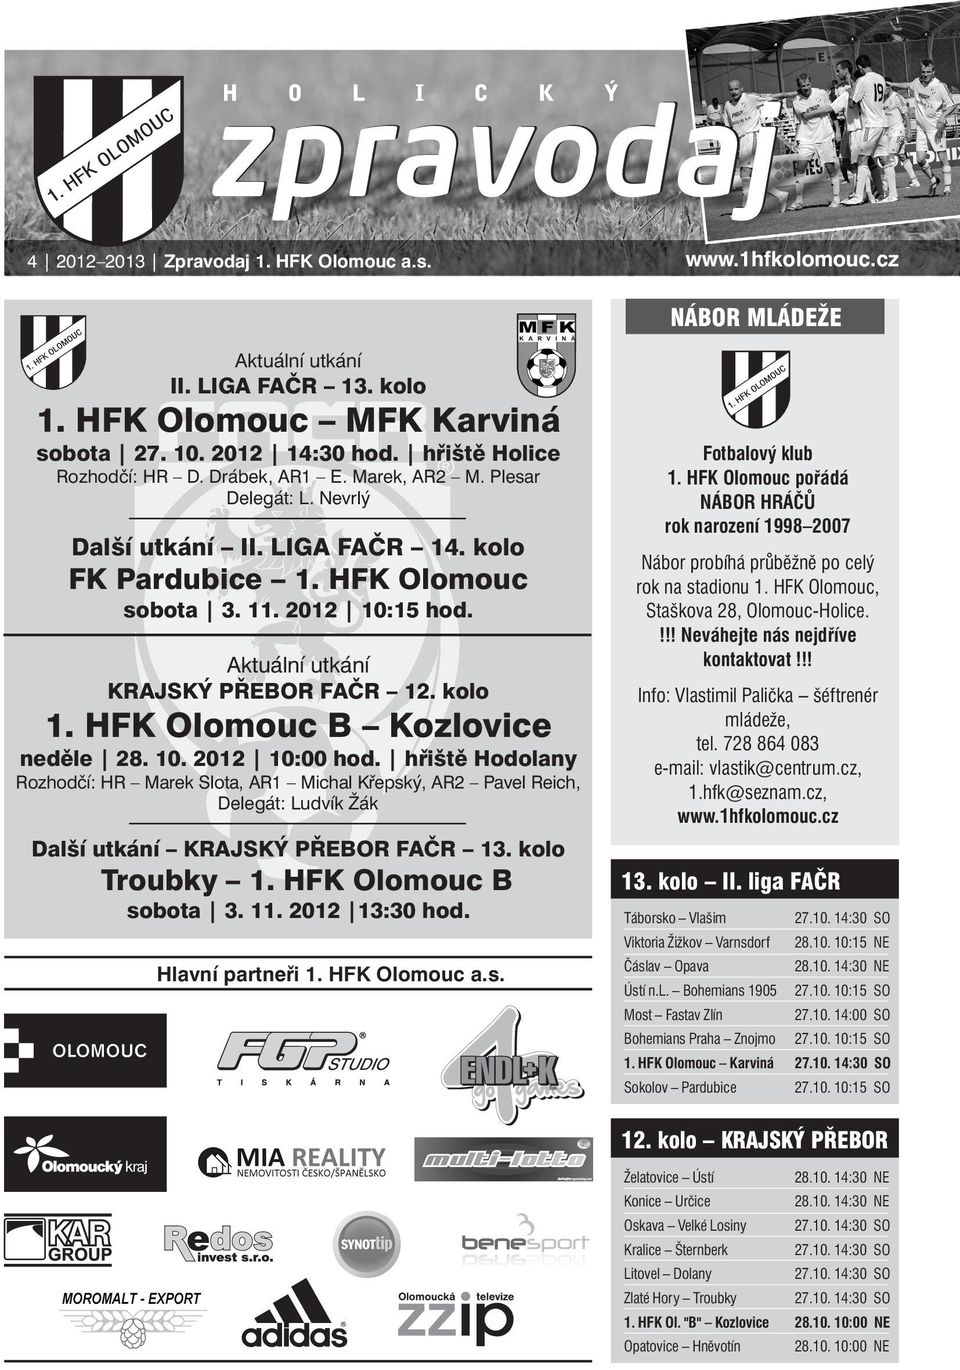 Aktuální utkání KRAJSKÝ PŘEBOR FAČR 12. kolo 1. HFK Olomouc B Kozlovice neděle 28. 10. 2012 10:00 hod.